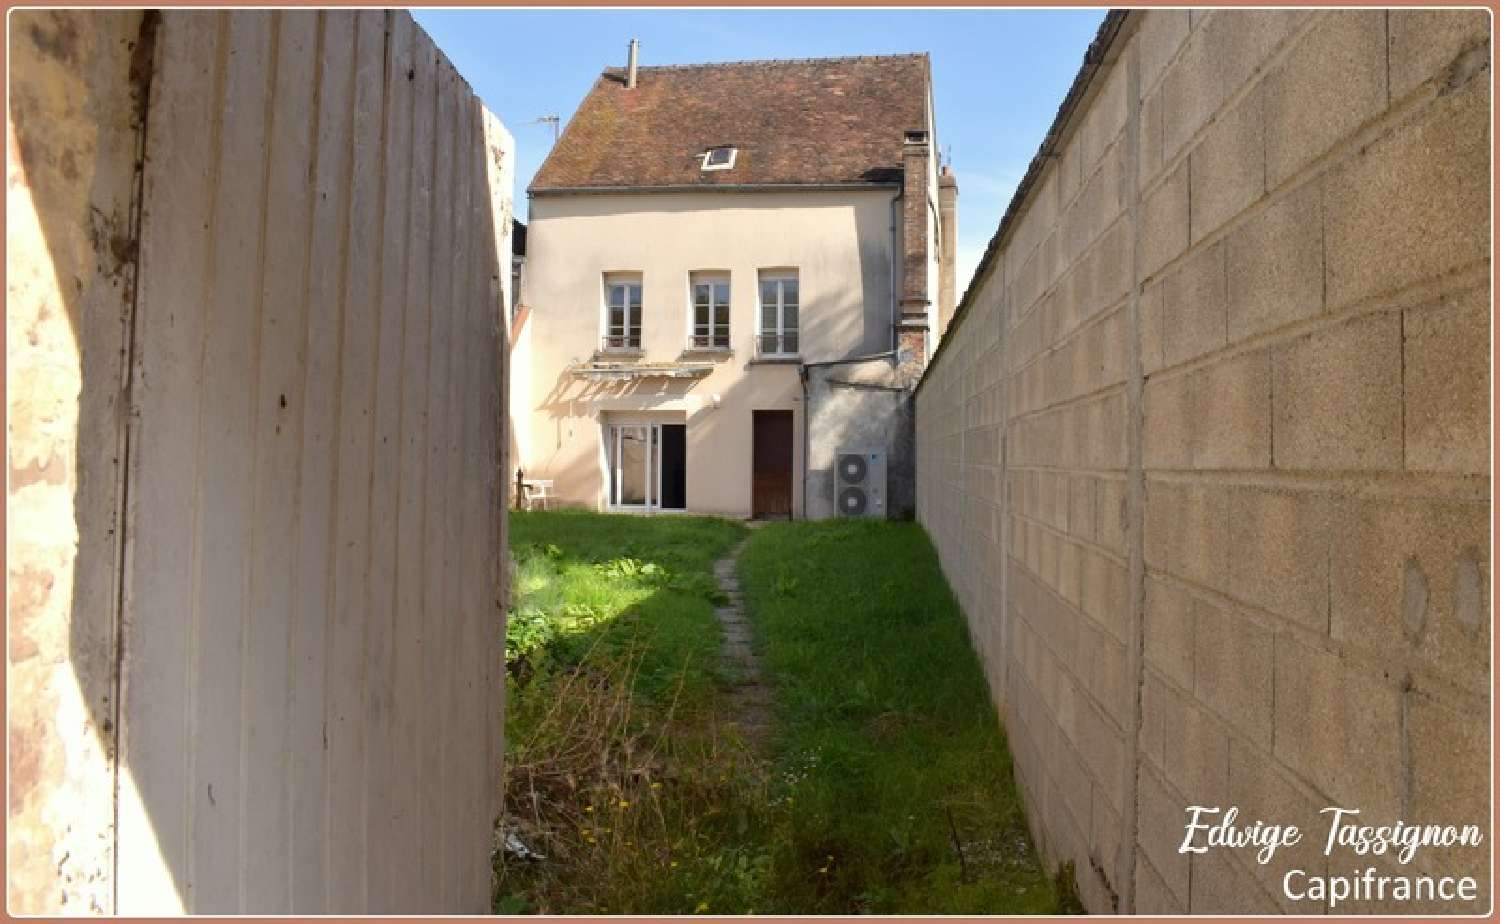  for sale village house Villeneuve-l'Archevêque Yonne 2